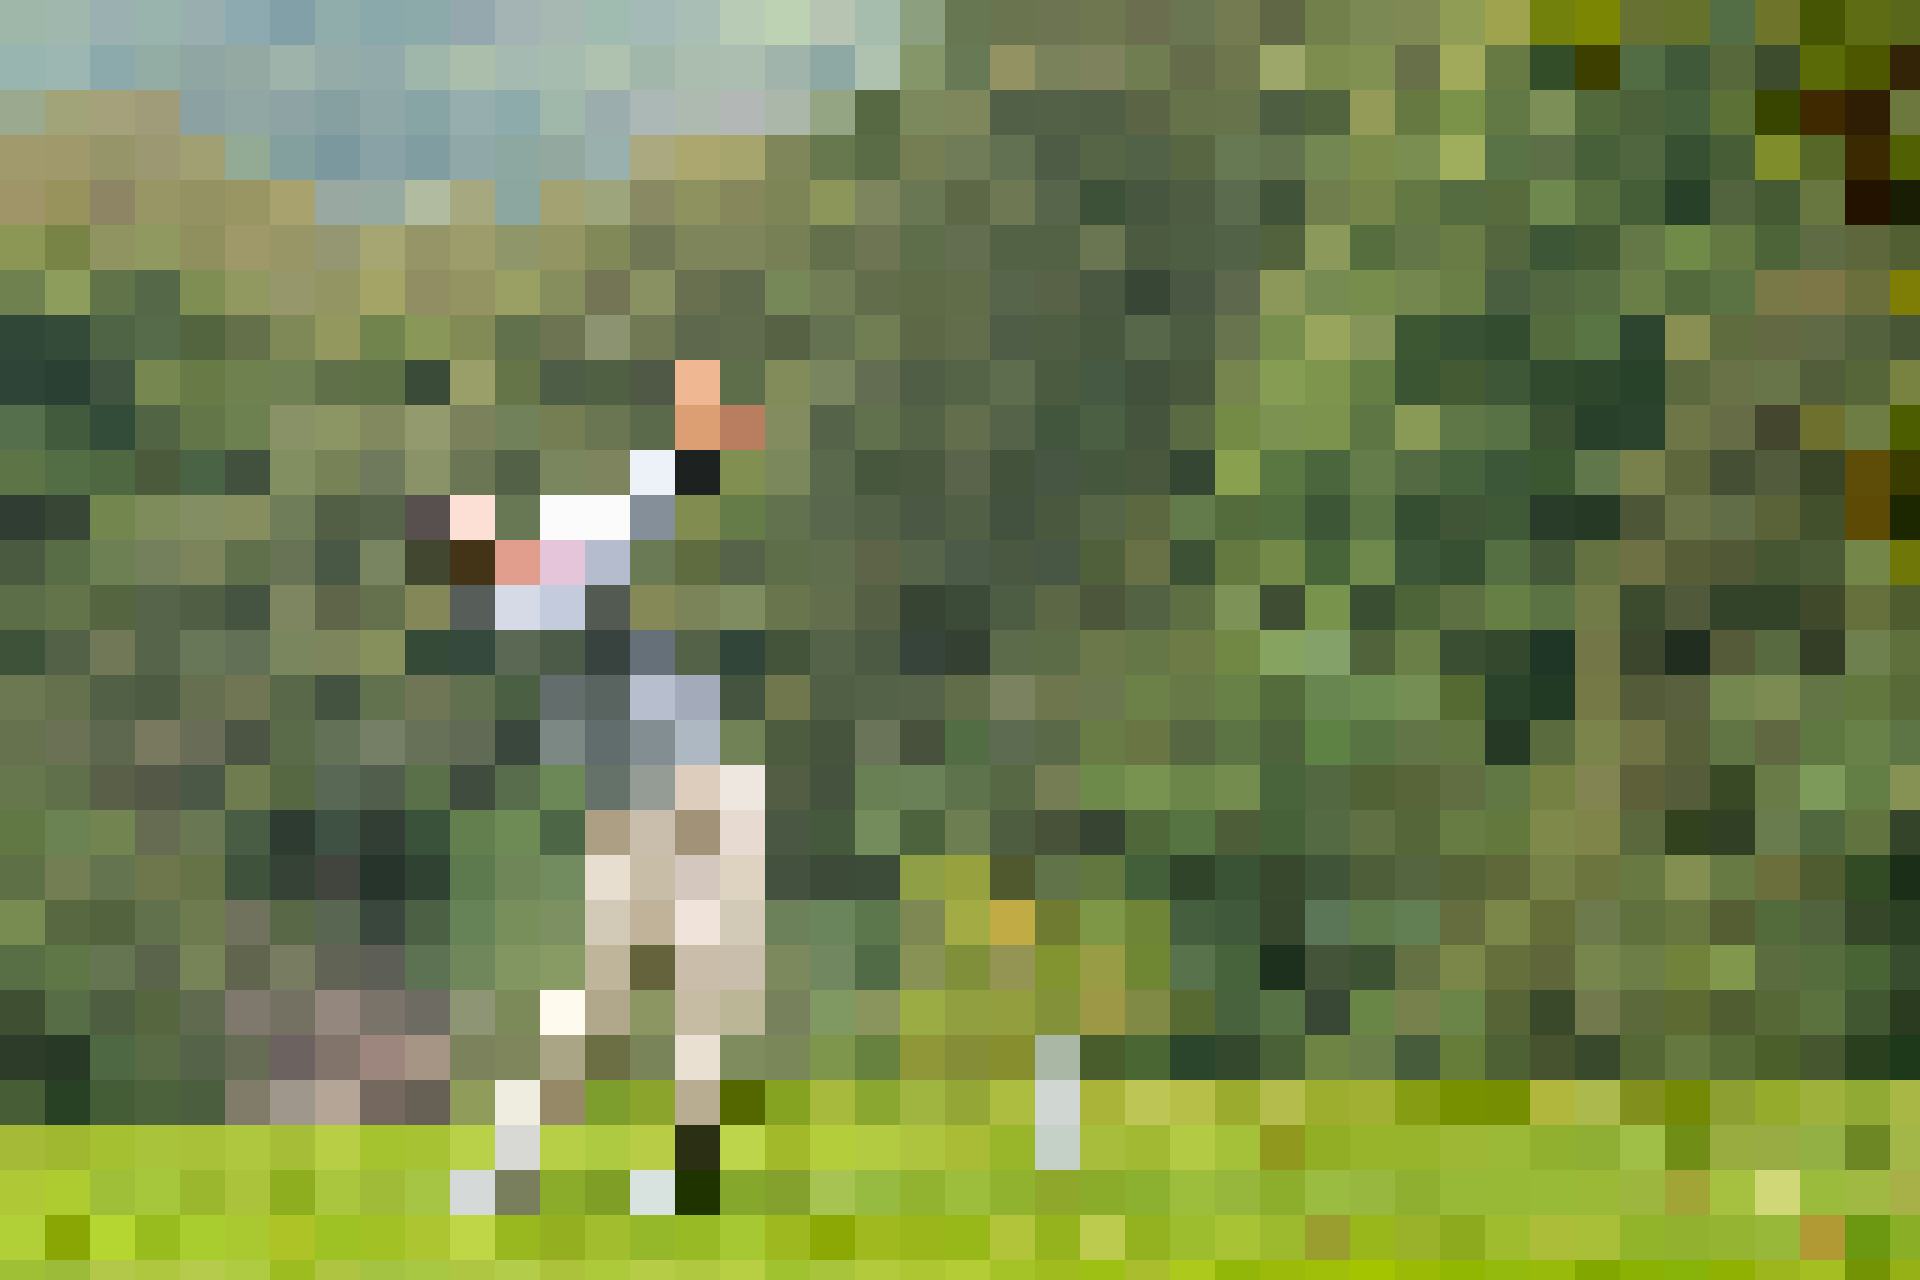 Golf & Flussgenuss – ein 2er Flight par excellence. An ausgewählten Daten mit an Bord und auf dem Green: Golf Pro Andrea Mantoan.